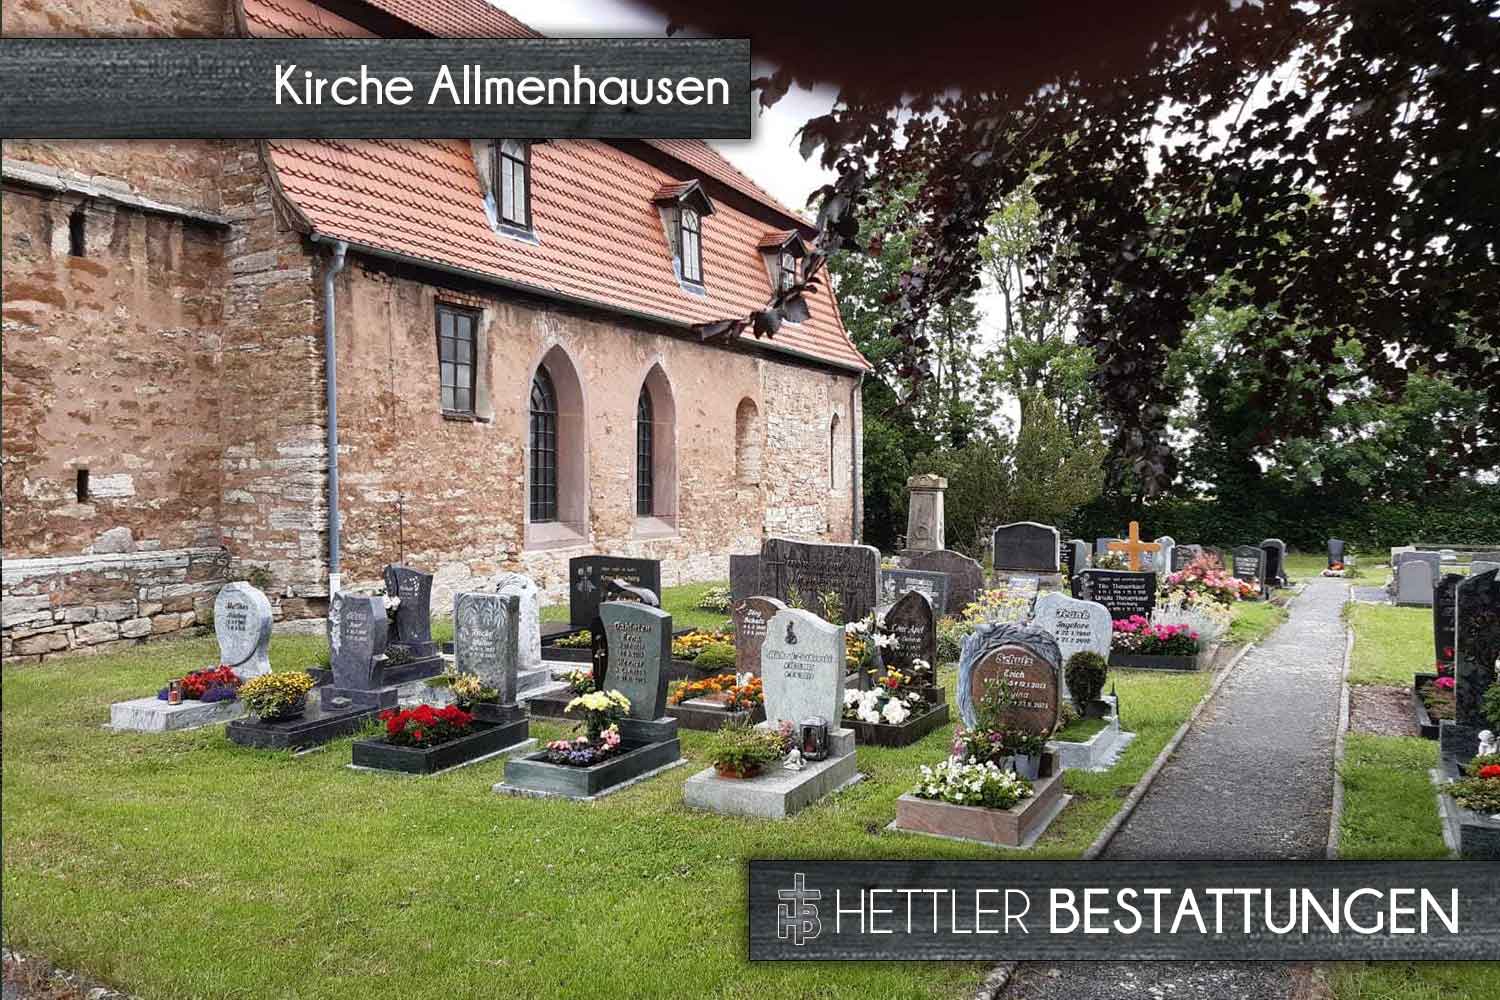 Trauerhalle, Kirche und Friedhof in Allmenhausen. Ihr Ort des Abschieds mit Hettler Bestattungen.